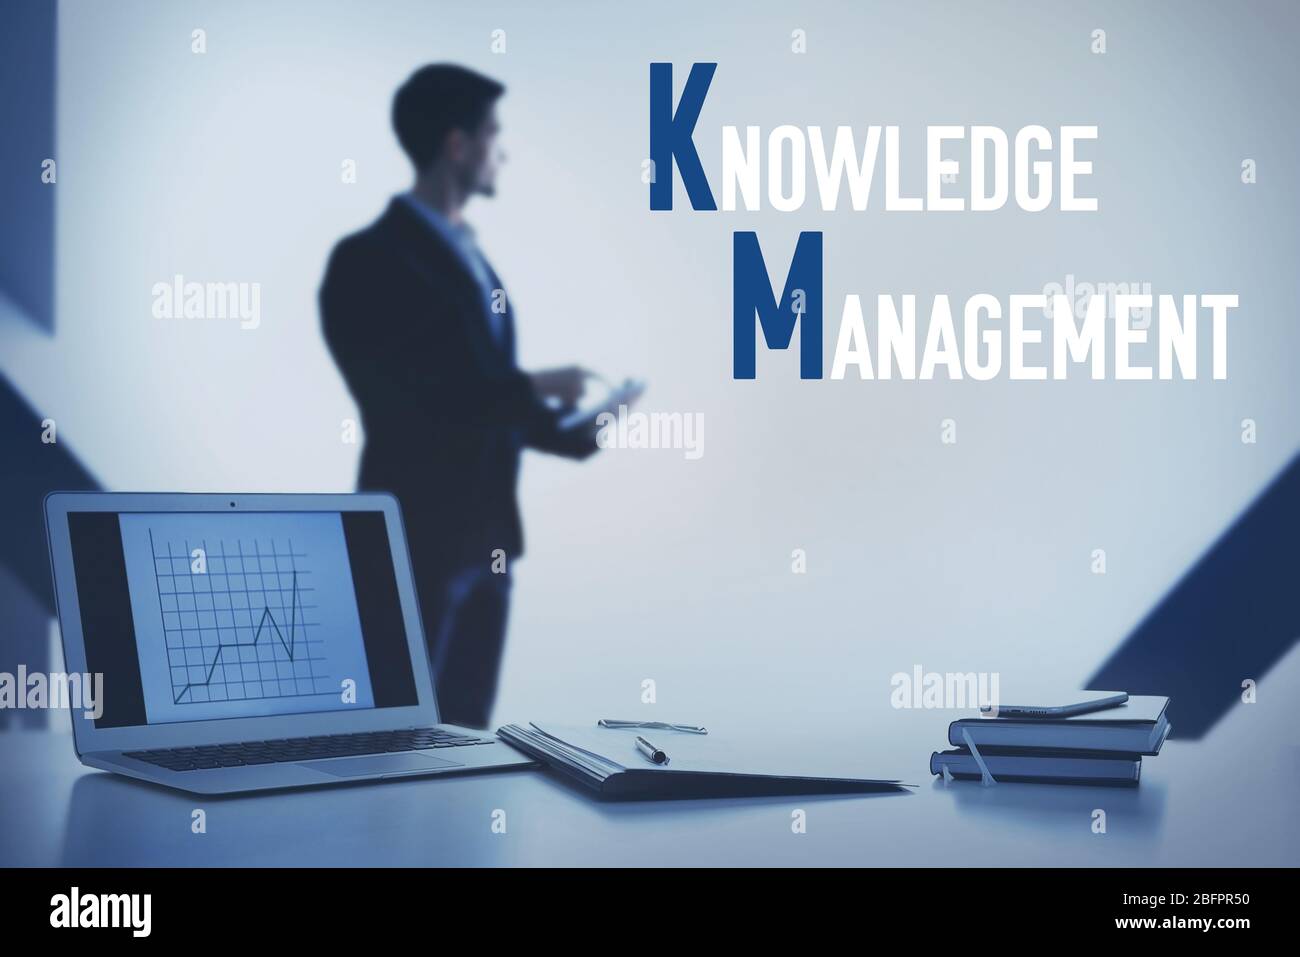 Concetto di gestione della conoscenza. Luogo di lavoro con notebook e uomo in background Foto Stock